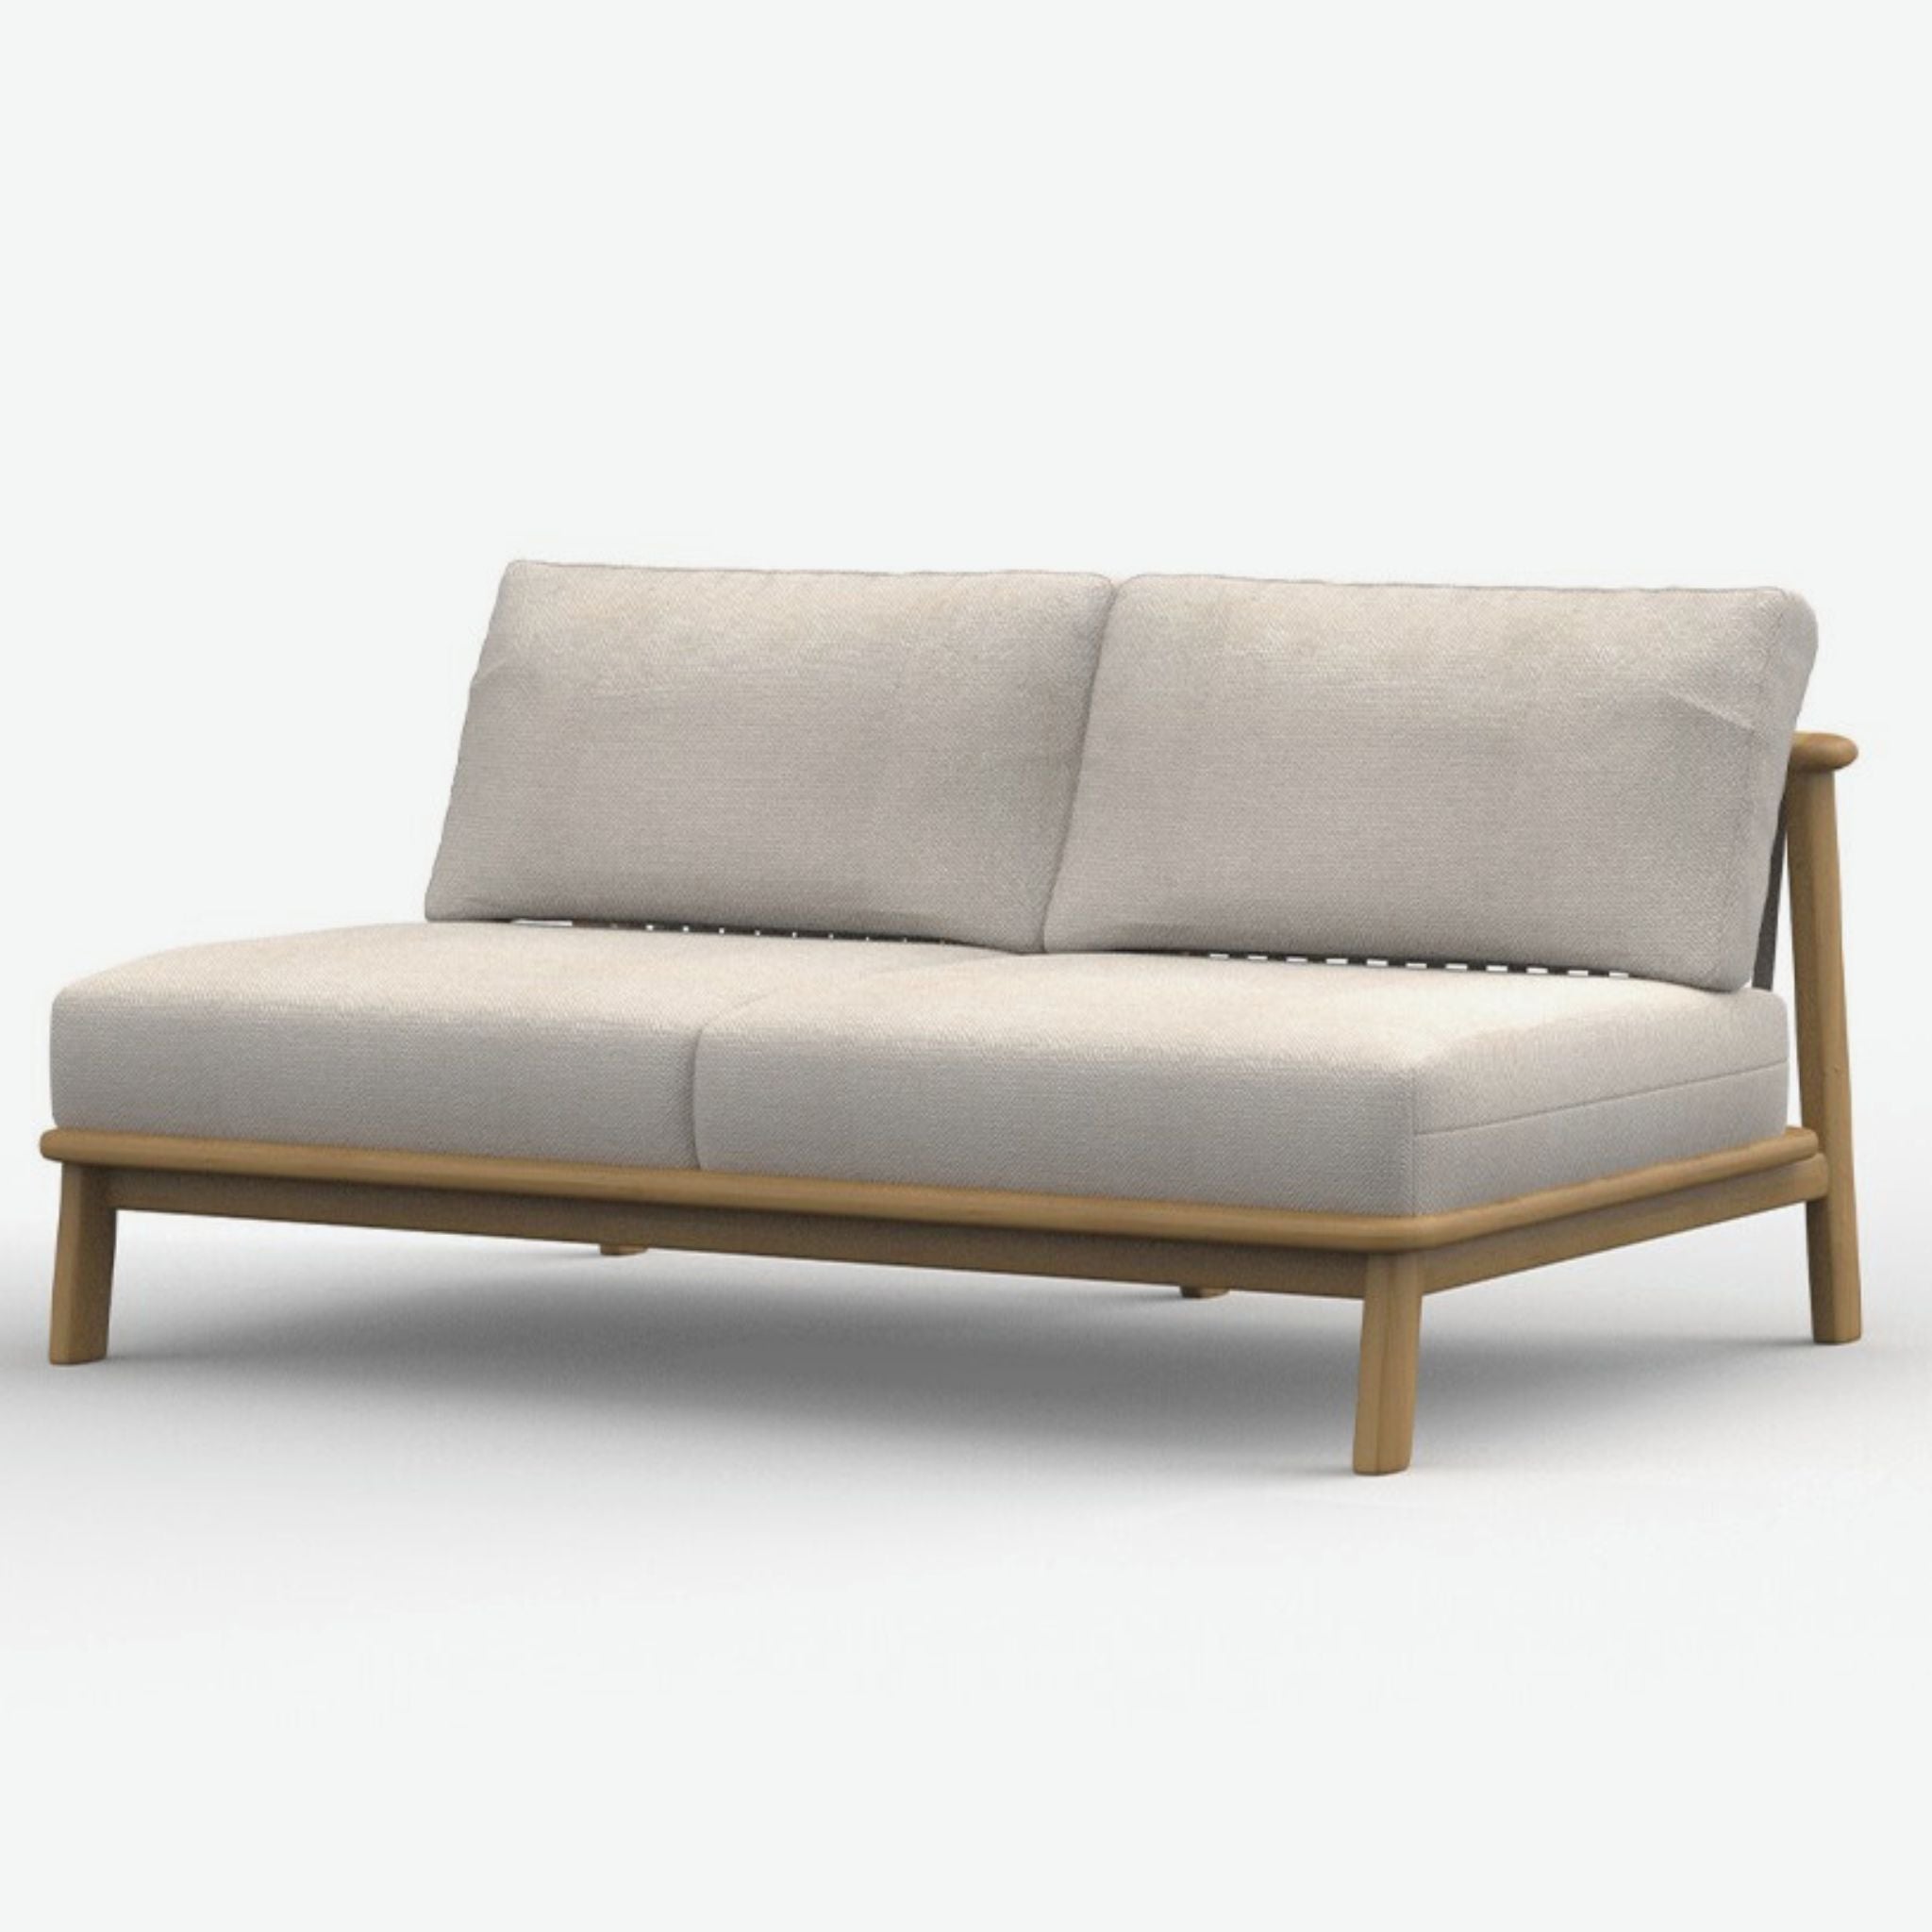 Crisal Decoracion Erice Modular Sofa Double Piece - ModernistaLiving